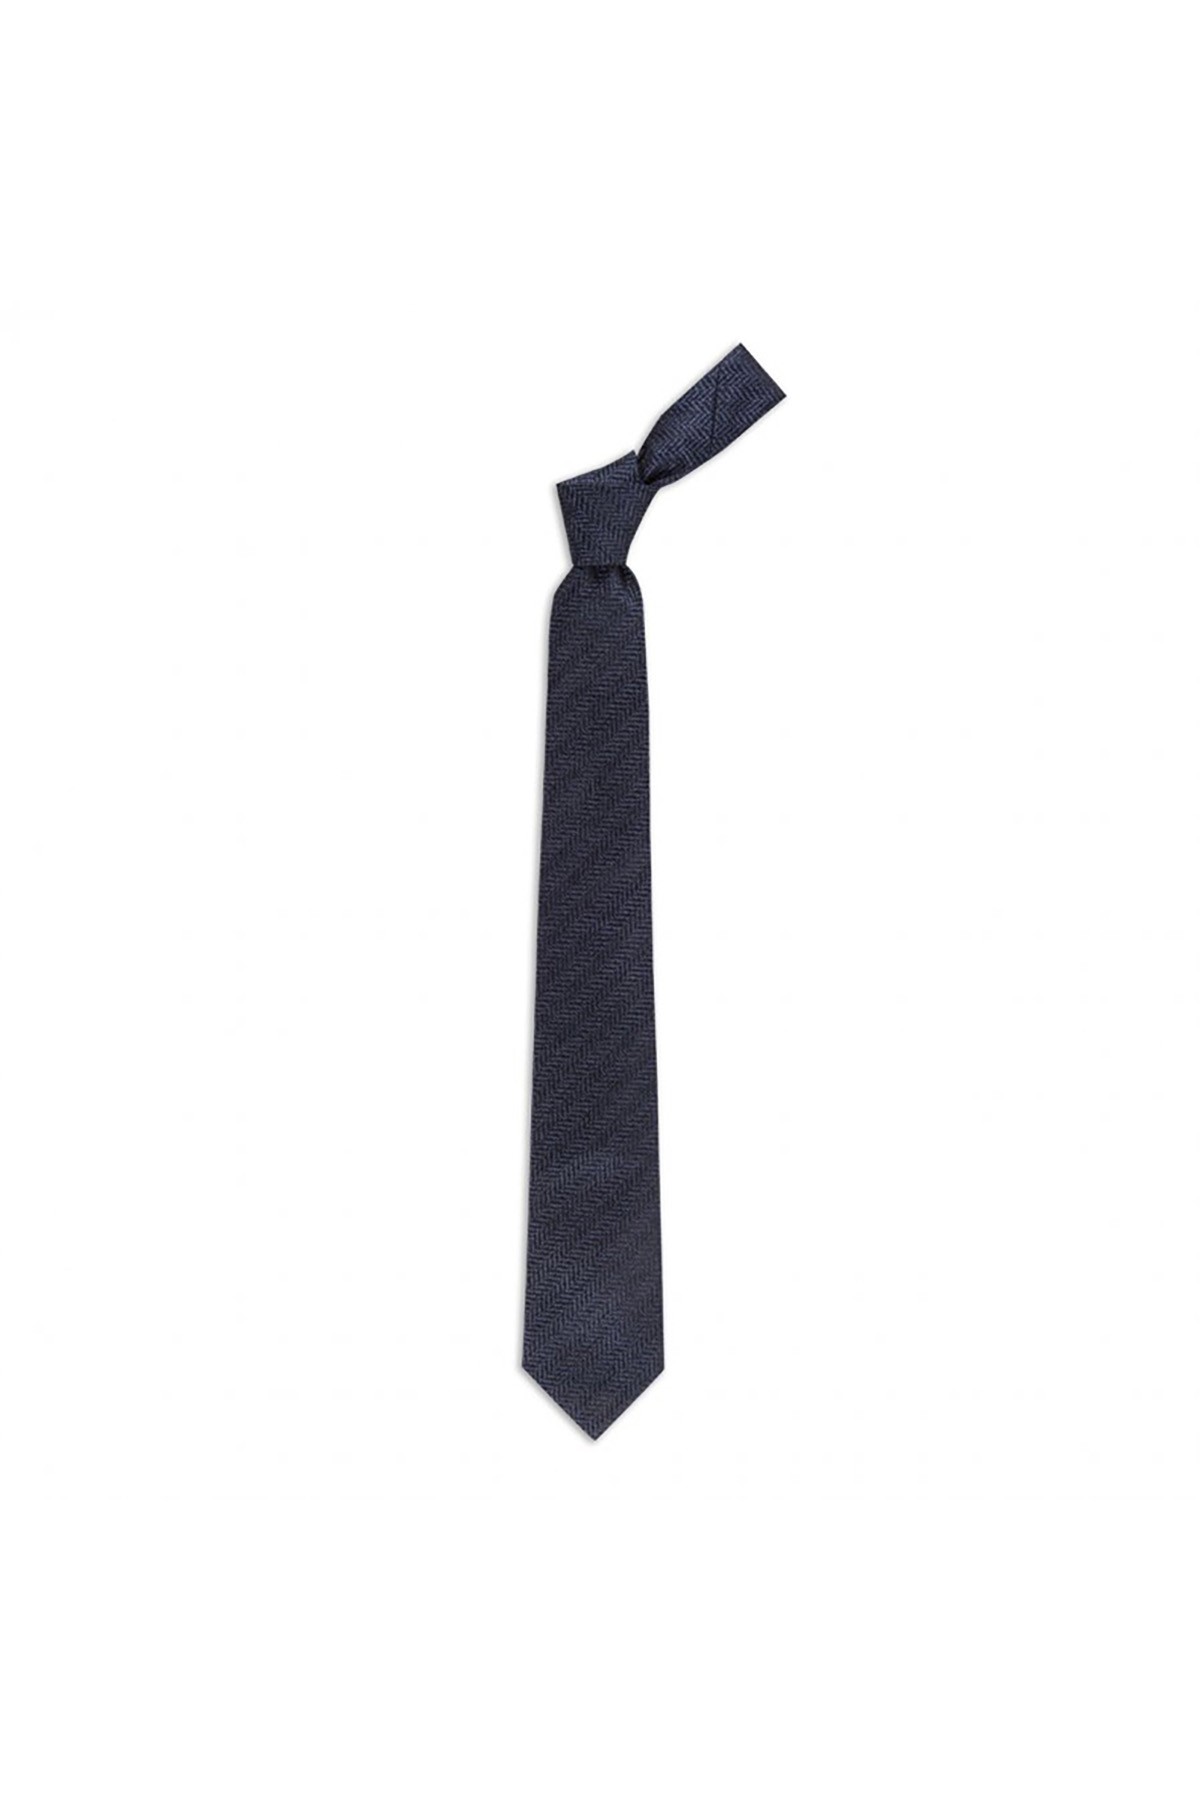 Balıksırtı desenli 8 cm genişliğinde yün ipek karışımlı kravat - Lacivert